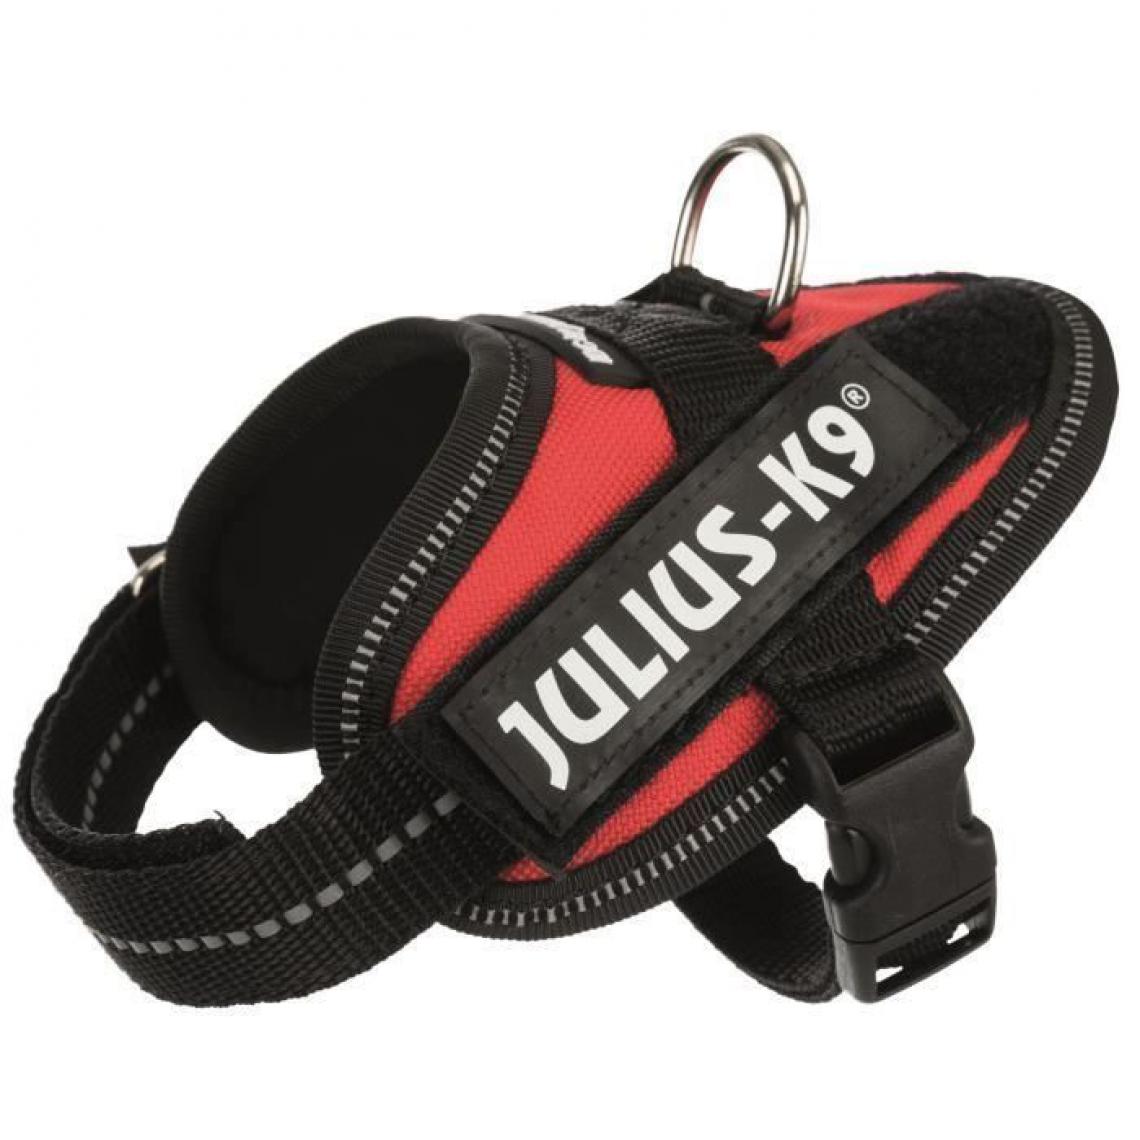 Julius K9 - JULIUS K9 Harnais Power IDC Baby 1-XS : 29-36 cm - 18 mm - Rouge - Pour chien - Equipement de transport pour chien